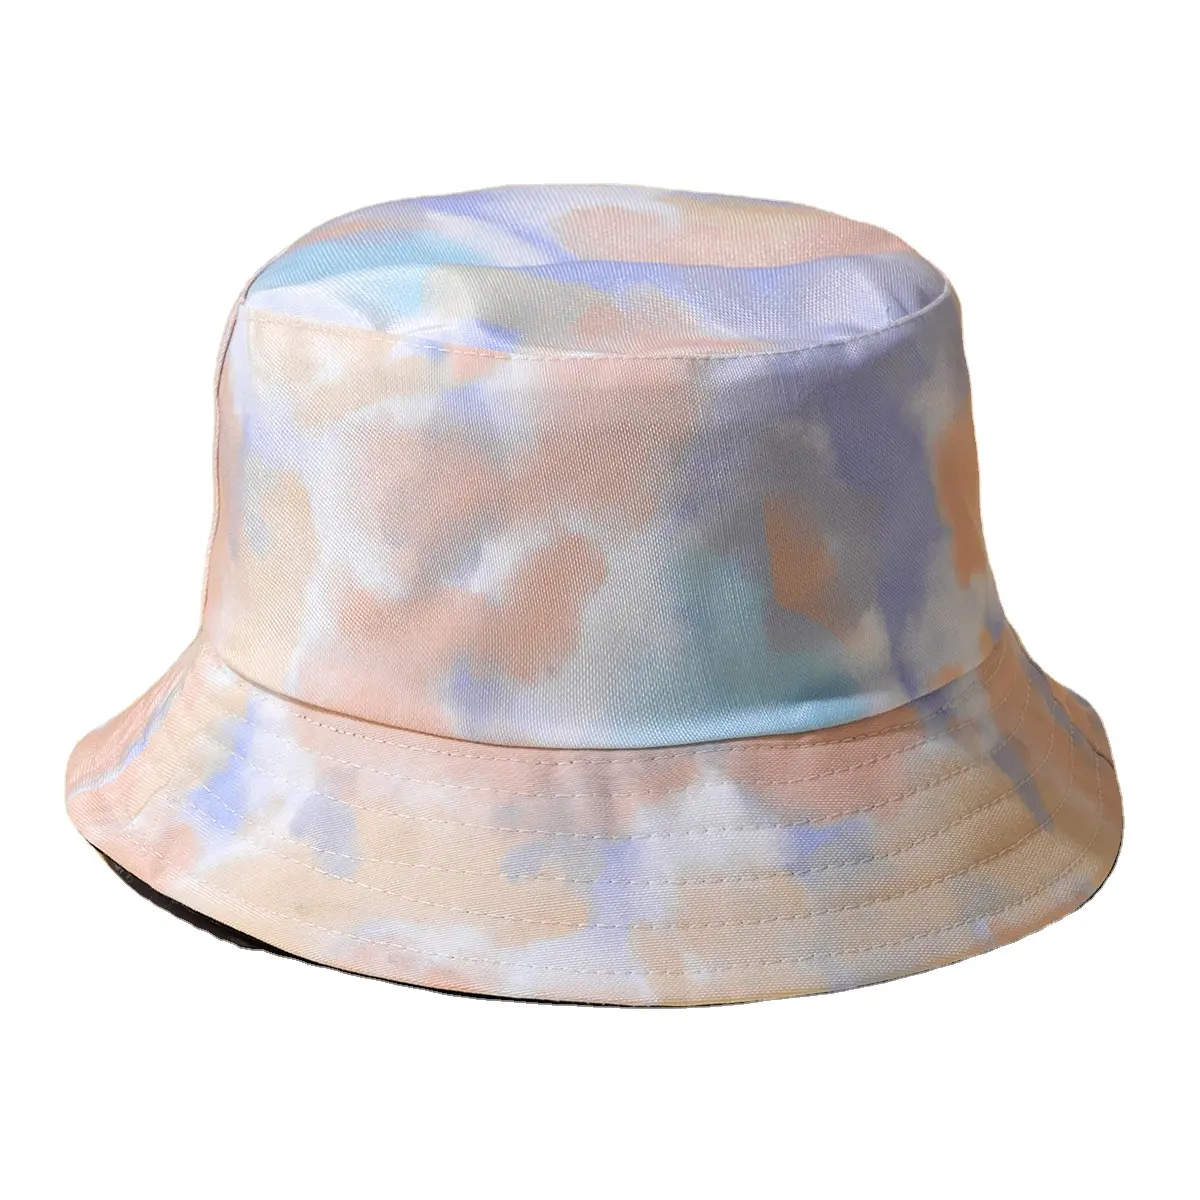 Großhandel neue Produkte Eimer Hut benutzer definierte Geschenk Modedesign Outdoor Visier Reise party Lady Fisherman Hats